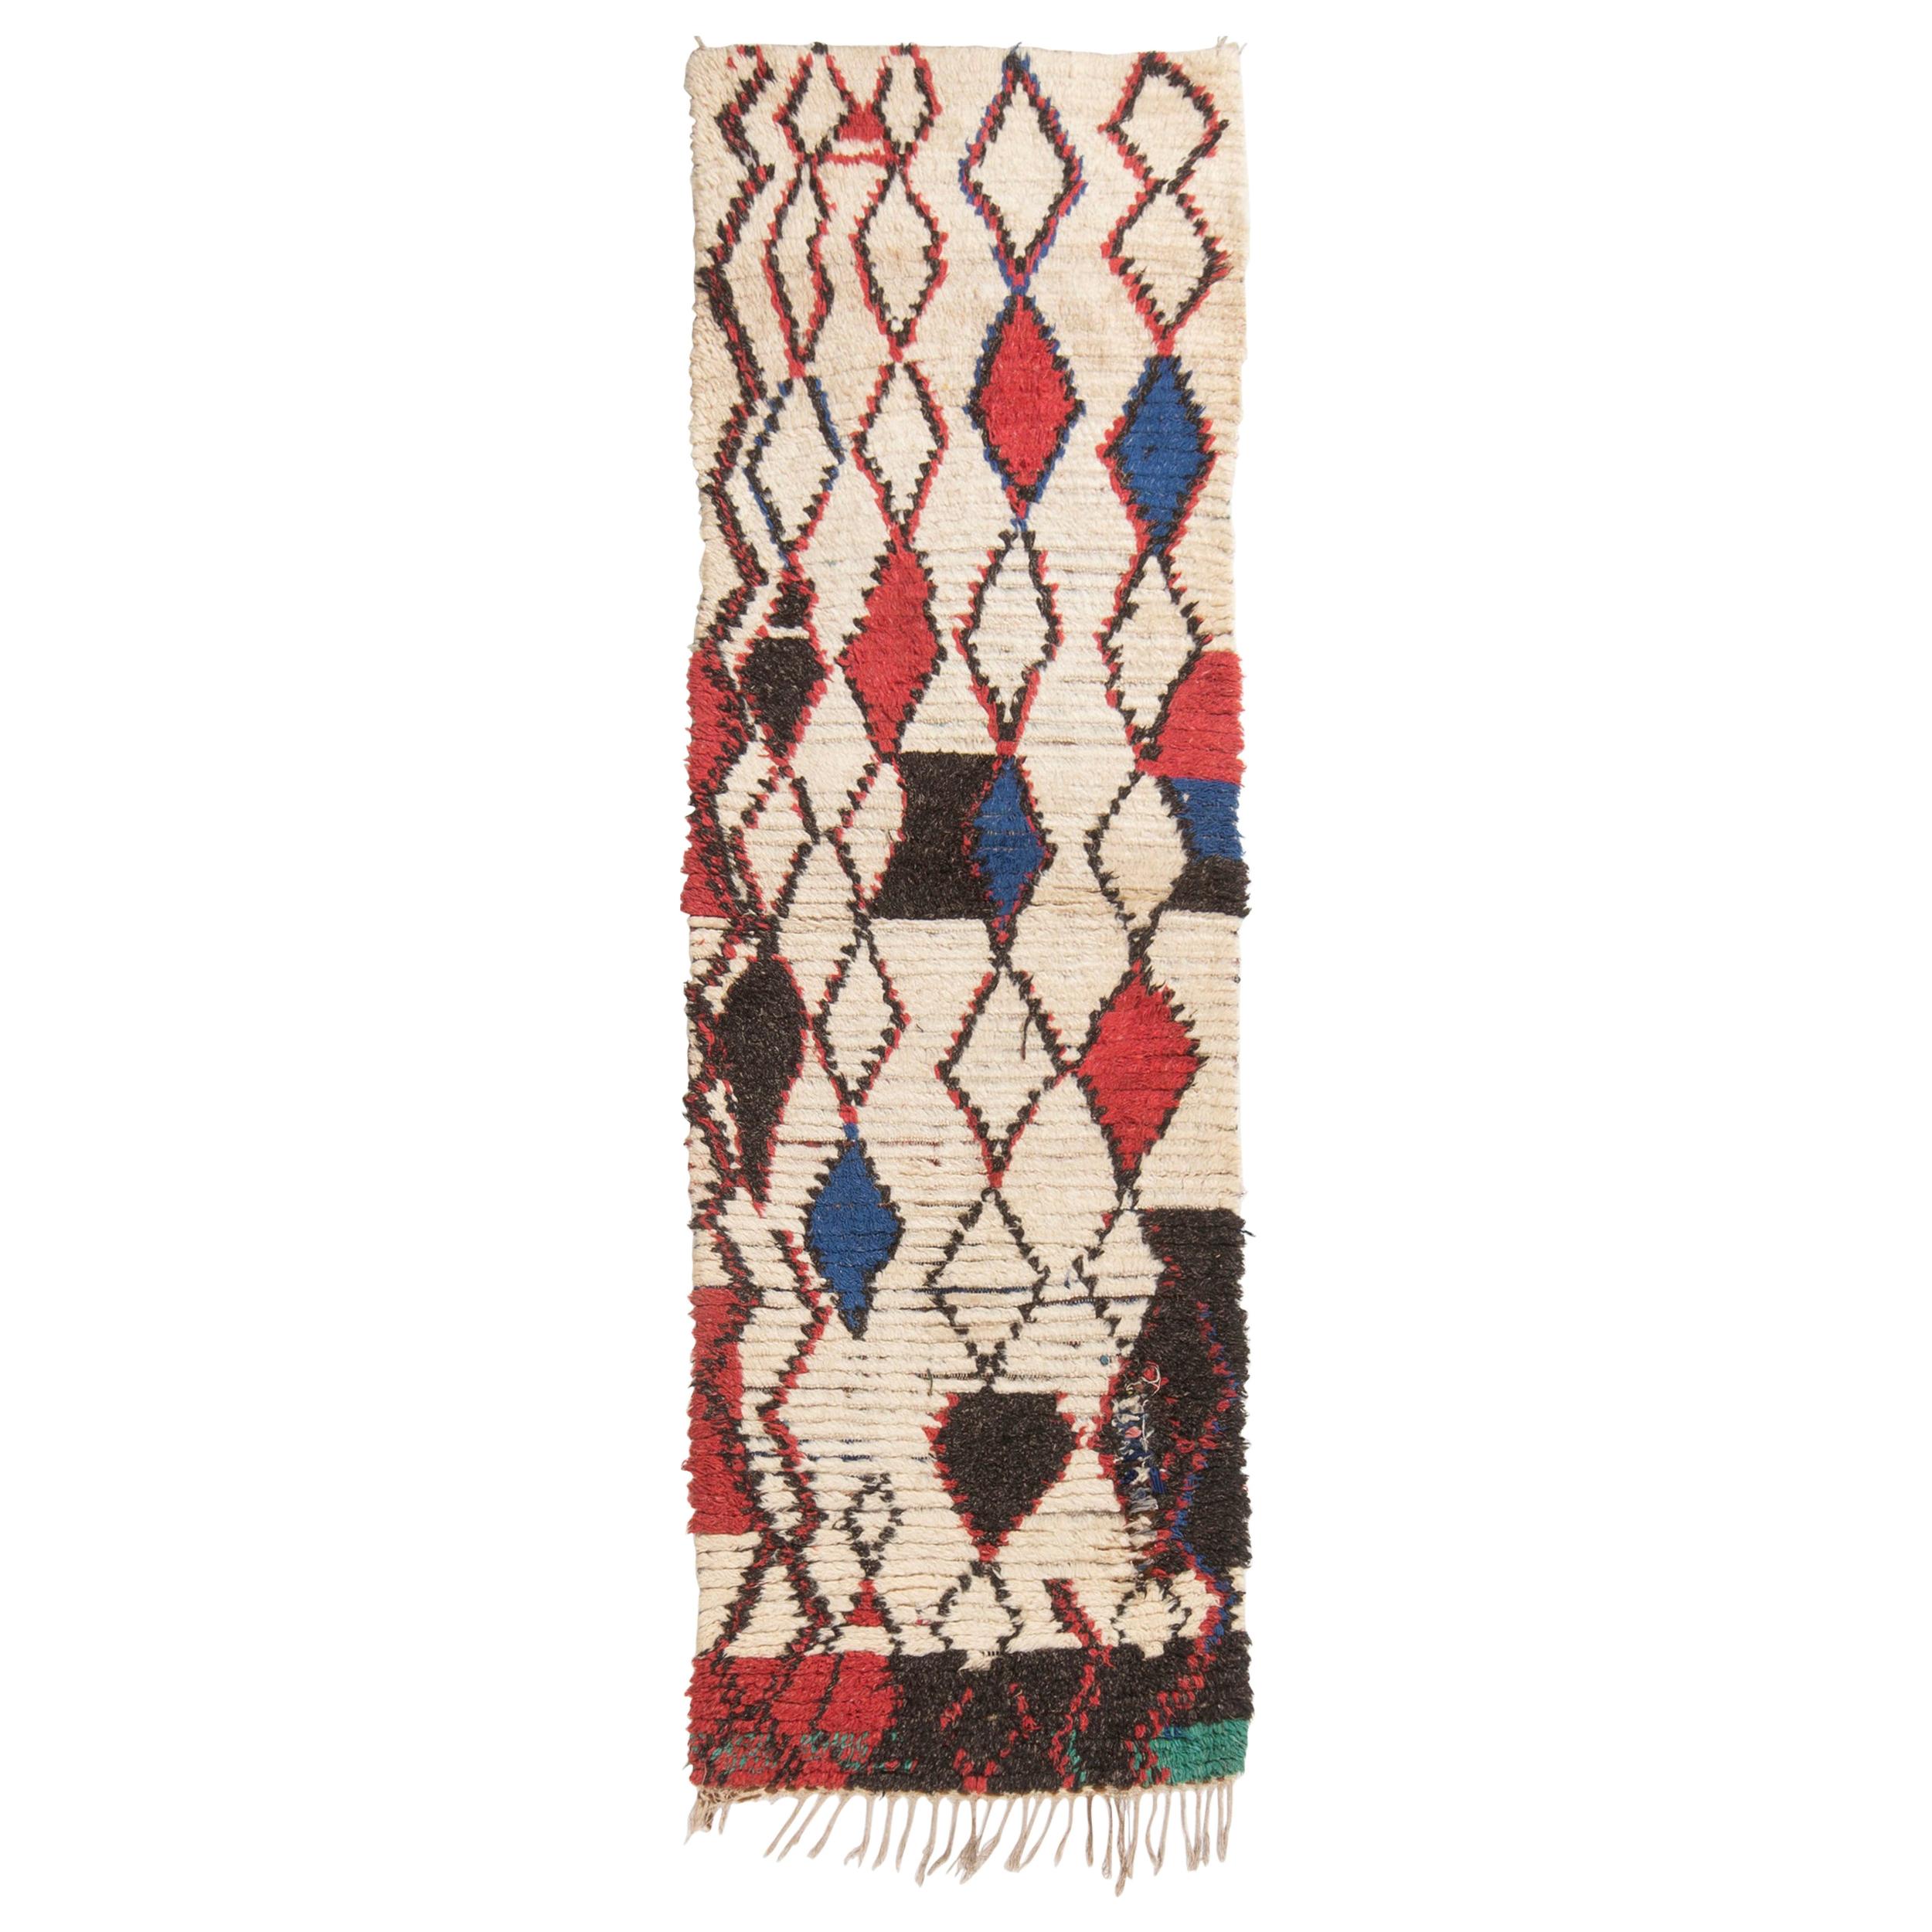 Vintage Midcentury Moroccan Beige Red and Blue Wool Rug by Rug & Kilim